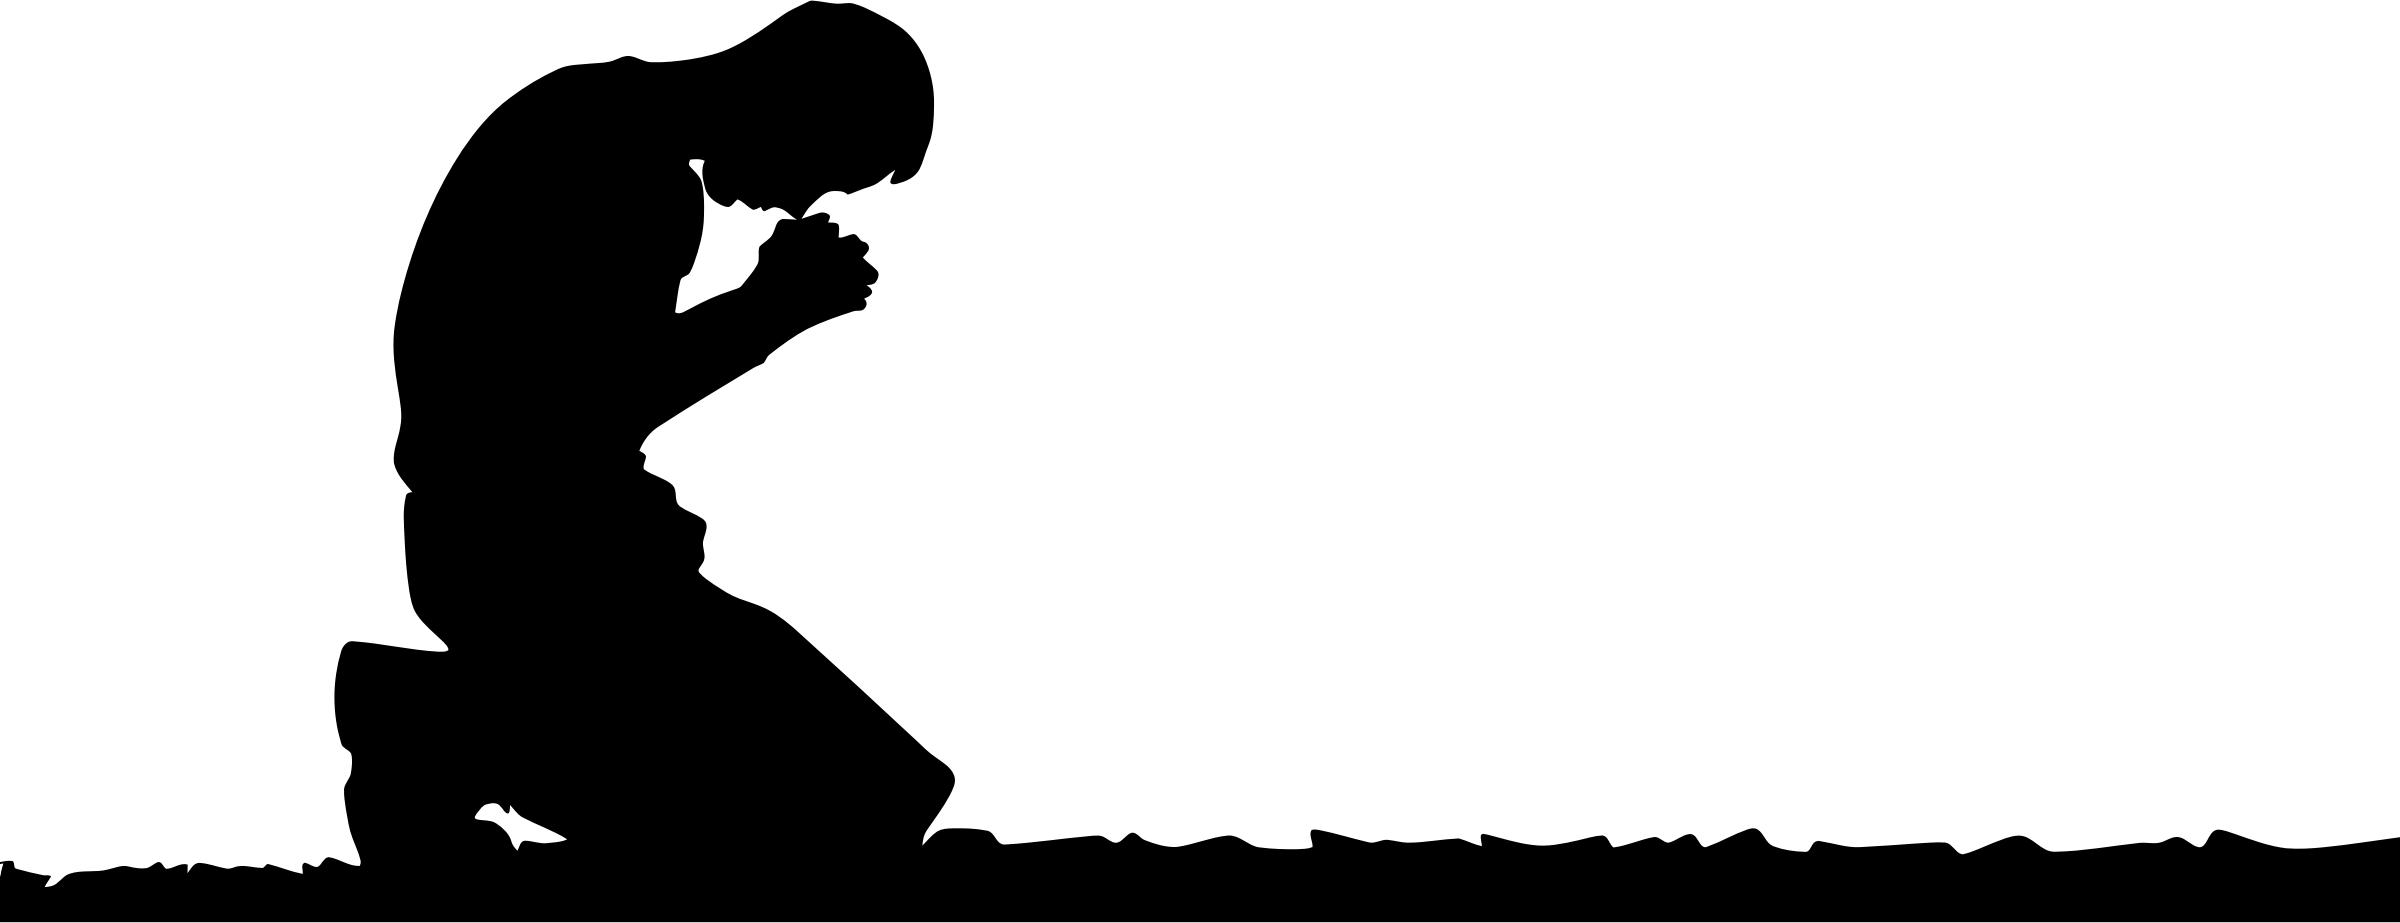 Man Kneeling In Prayer Silhouette png